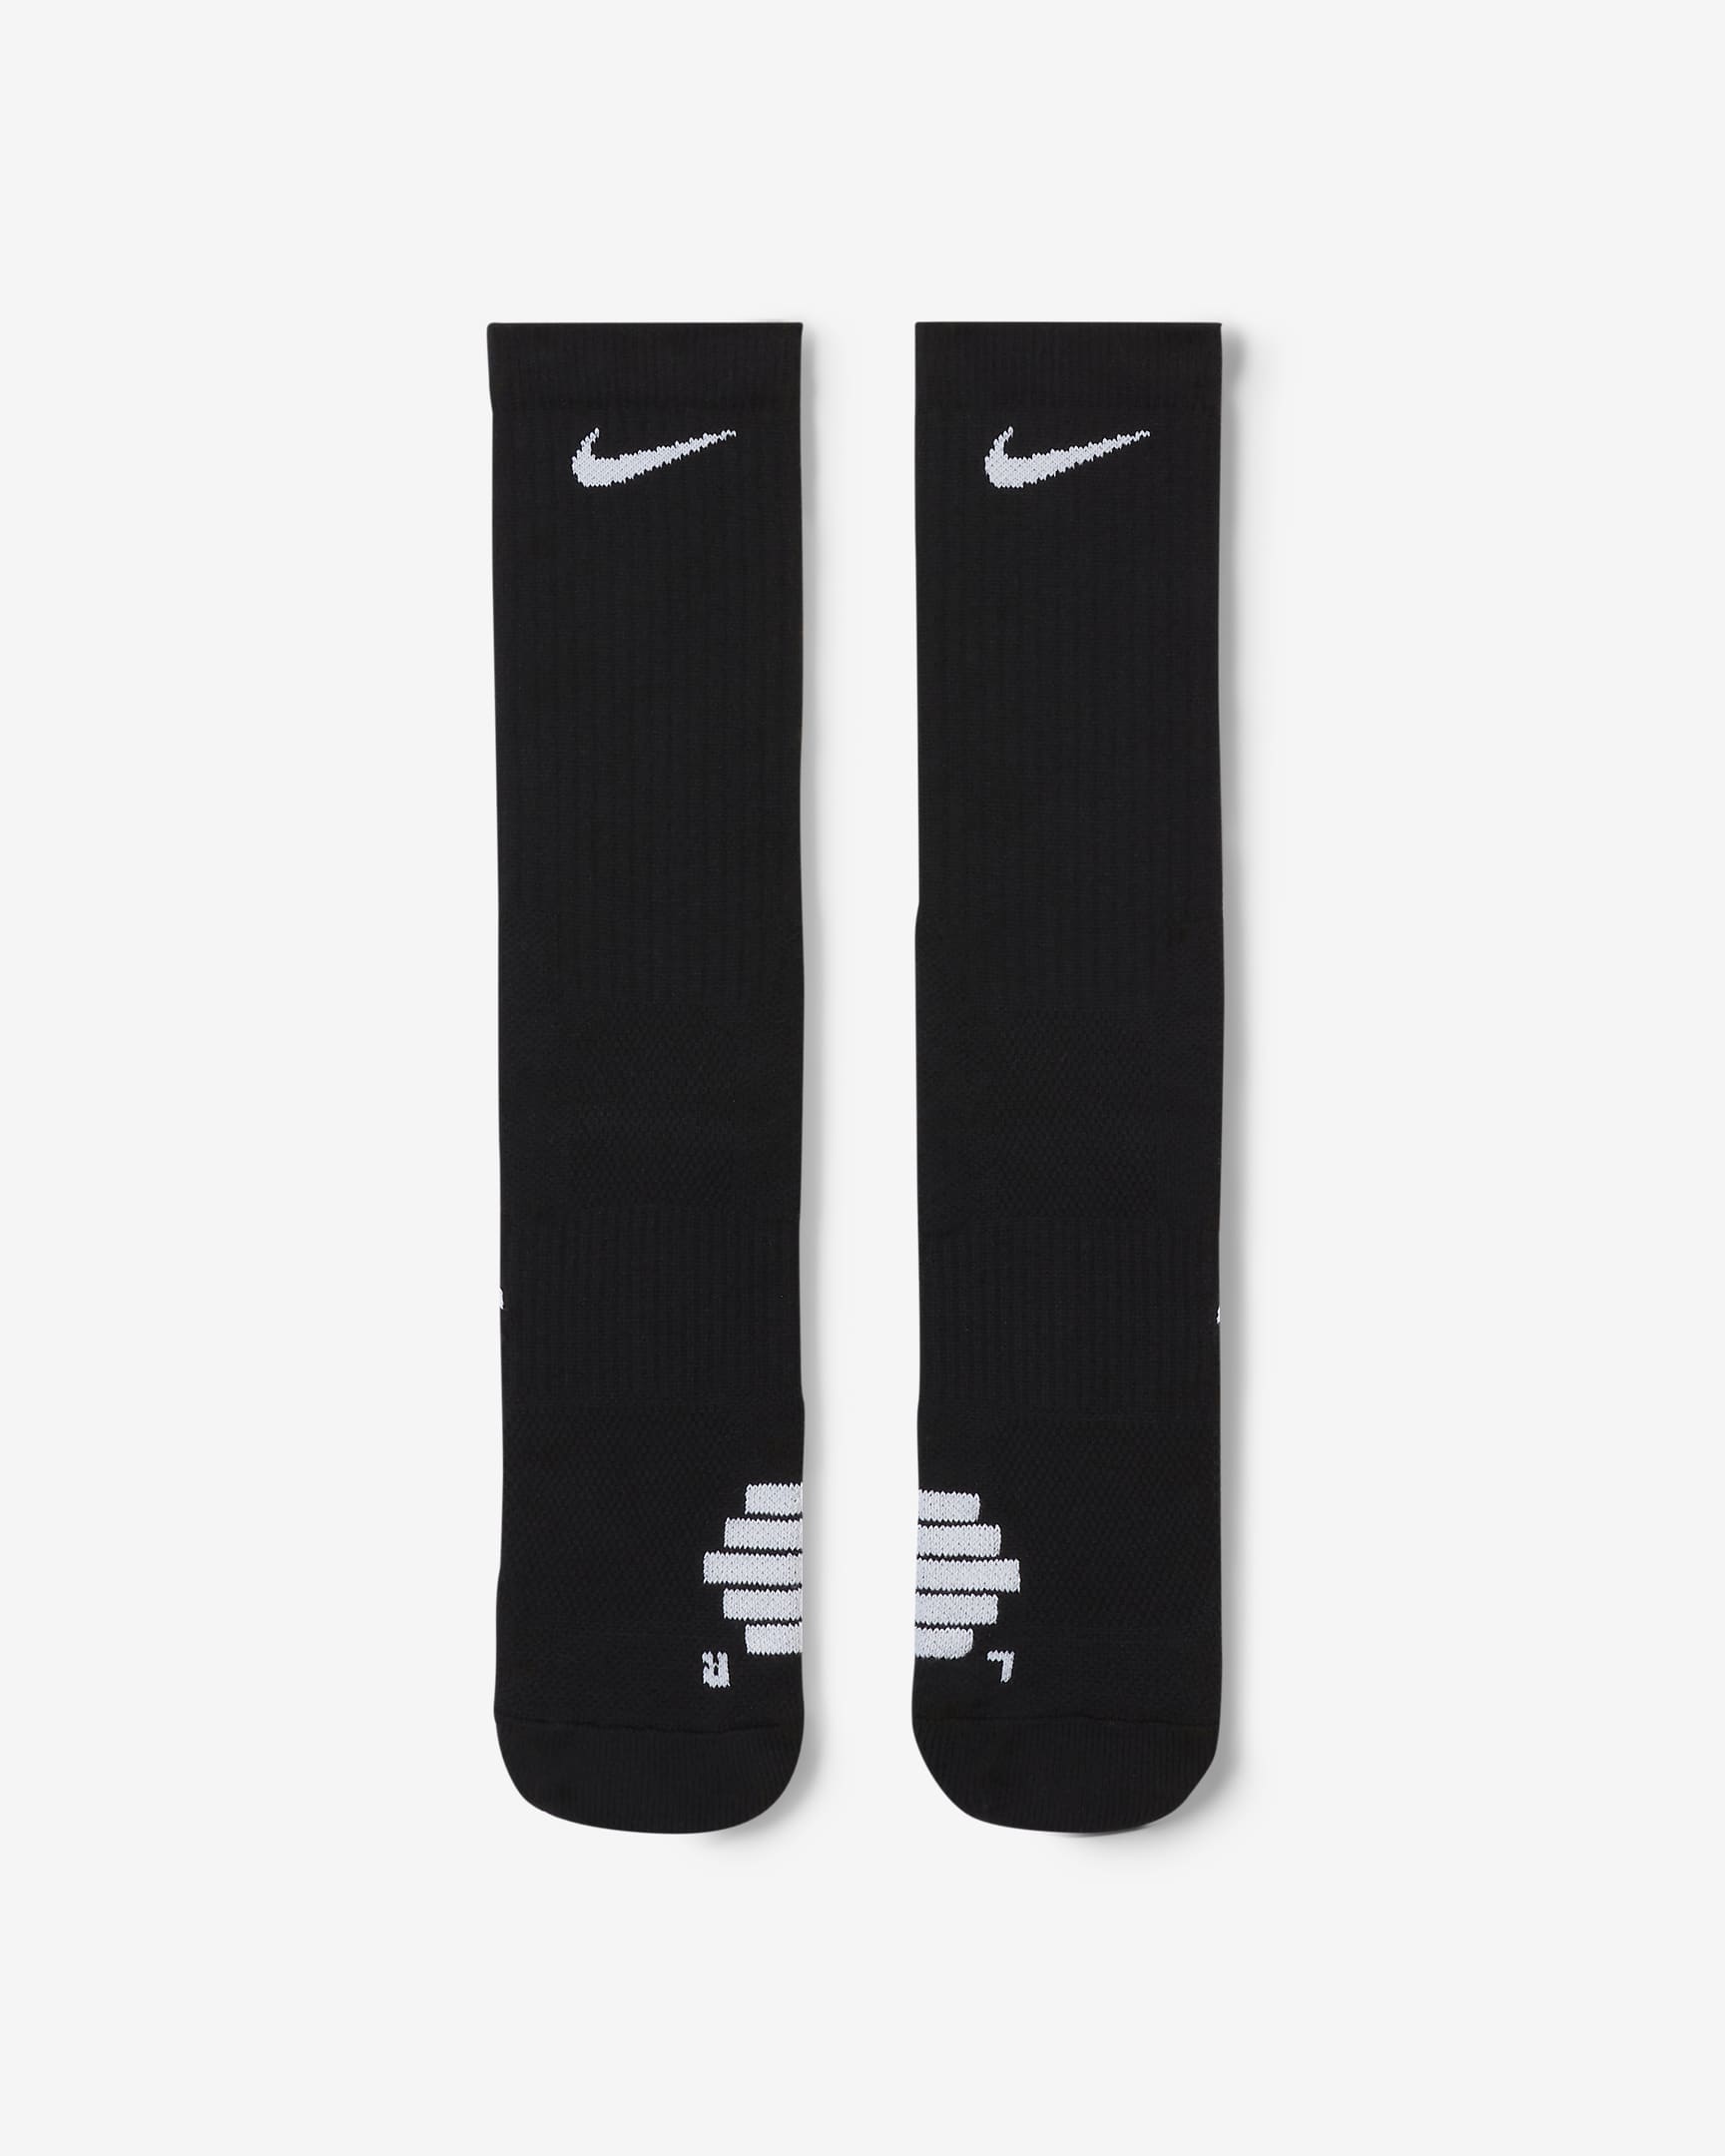 Basketbalové ponožky Nike Elite Crew - Černá/Bílá/Bílá